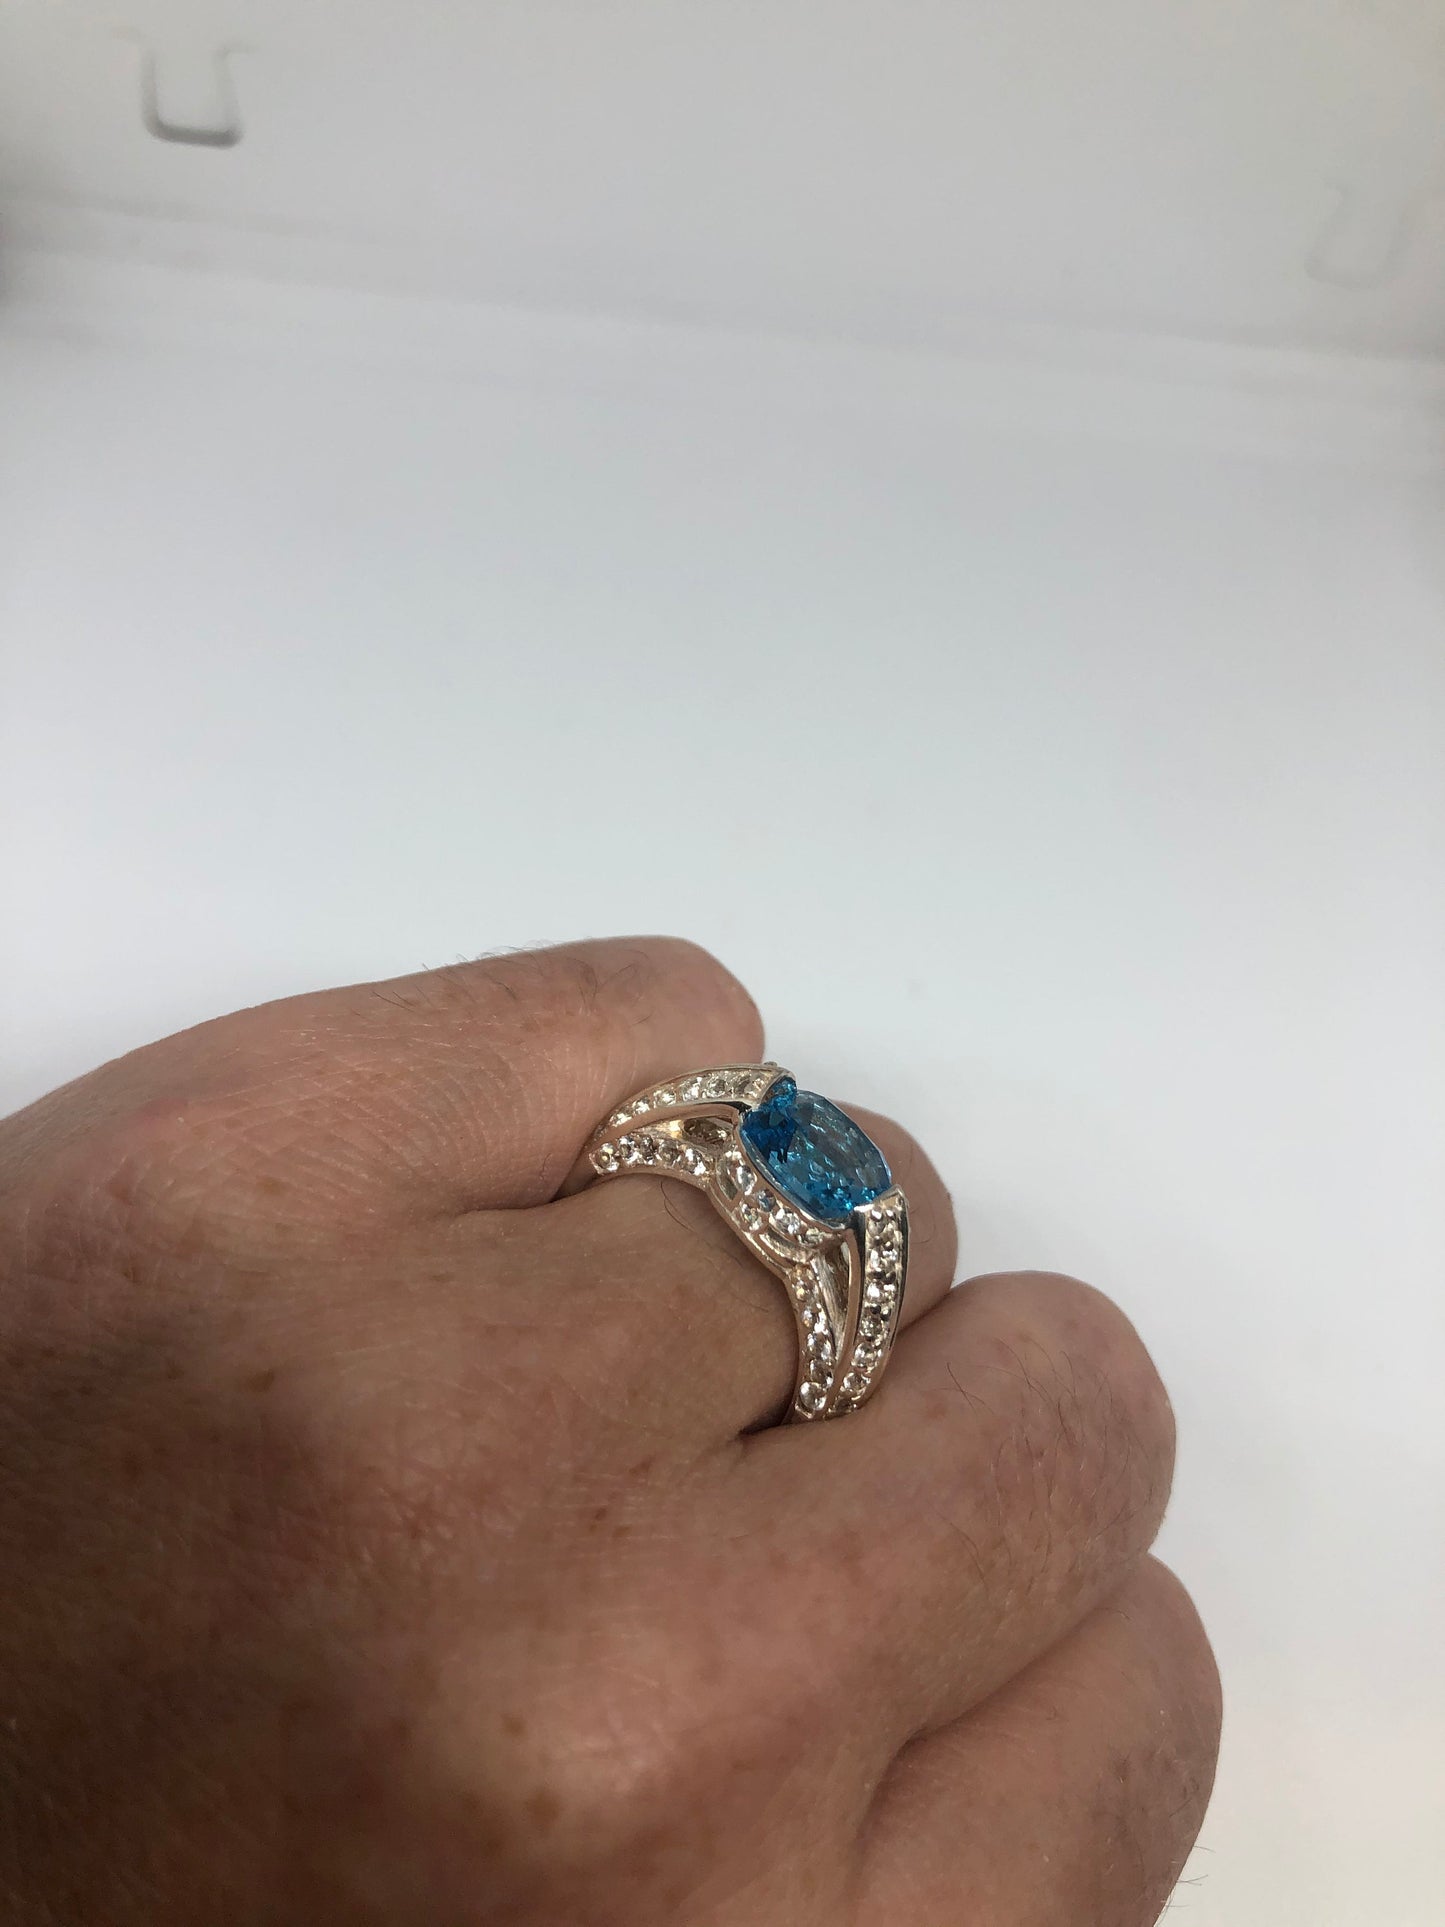 Vintage Genuine Blue Topaz 925 Sterling Silver Ring Size 7.5